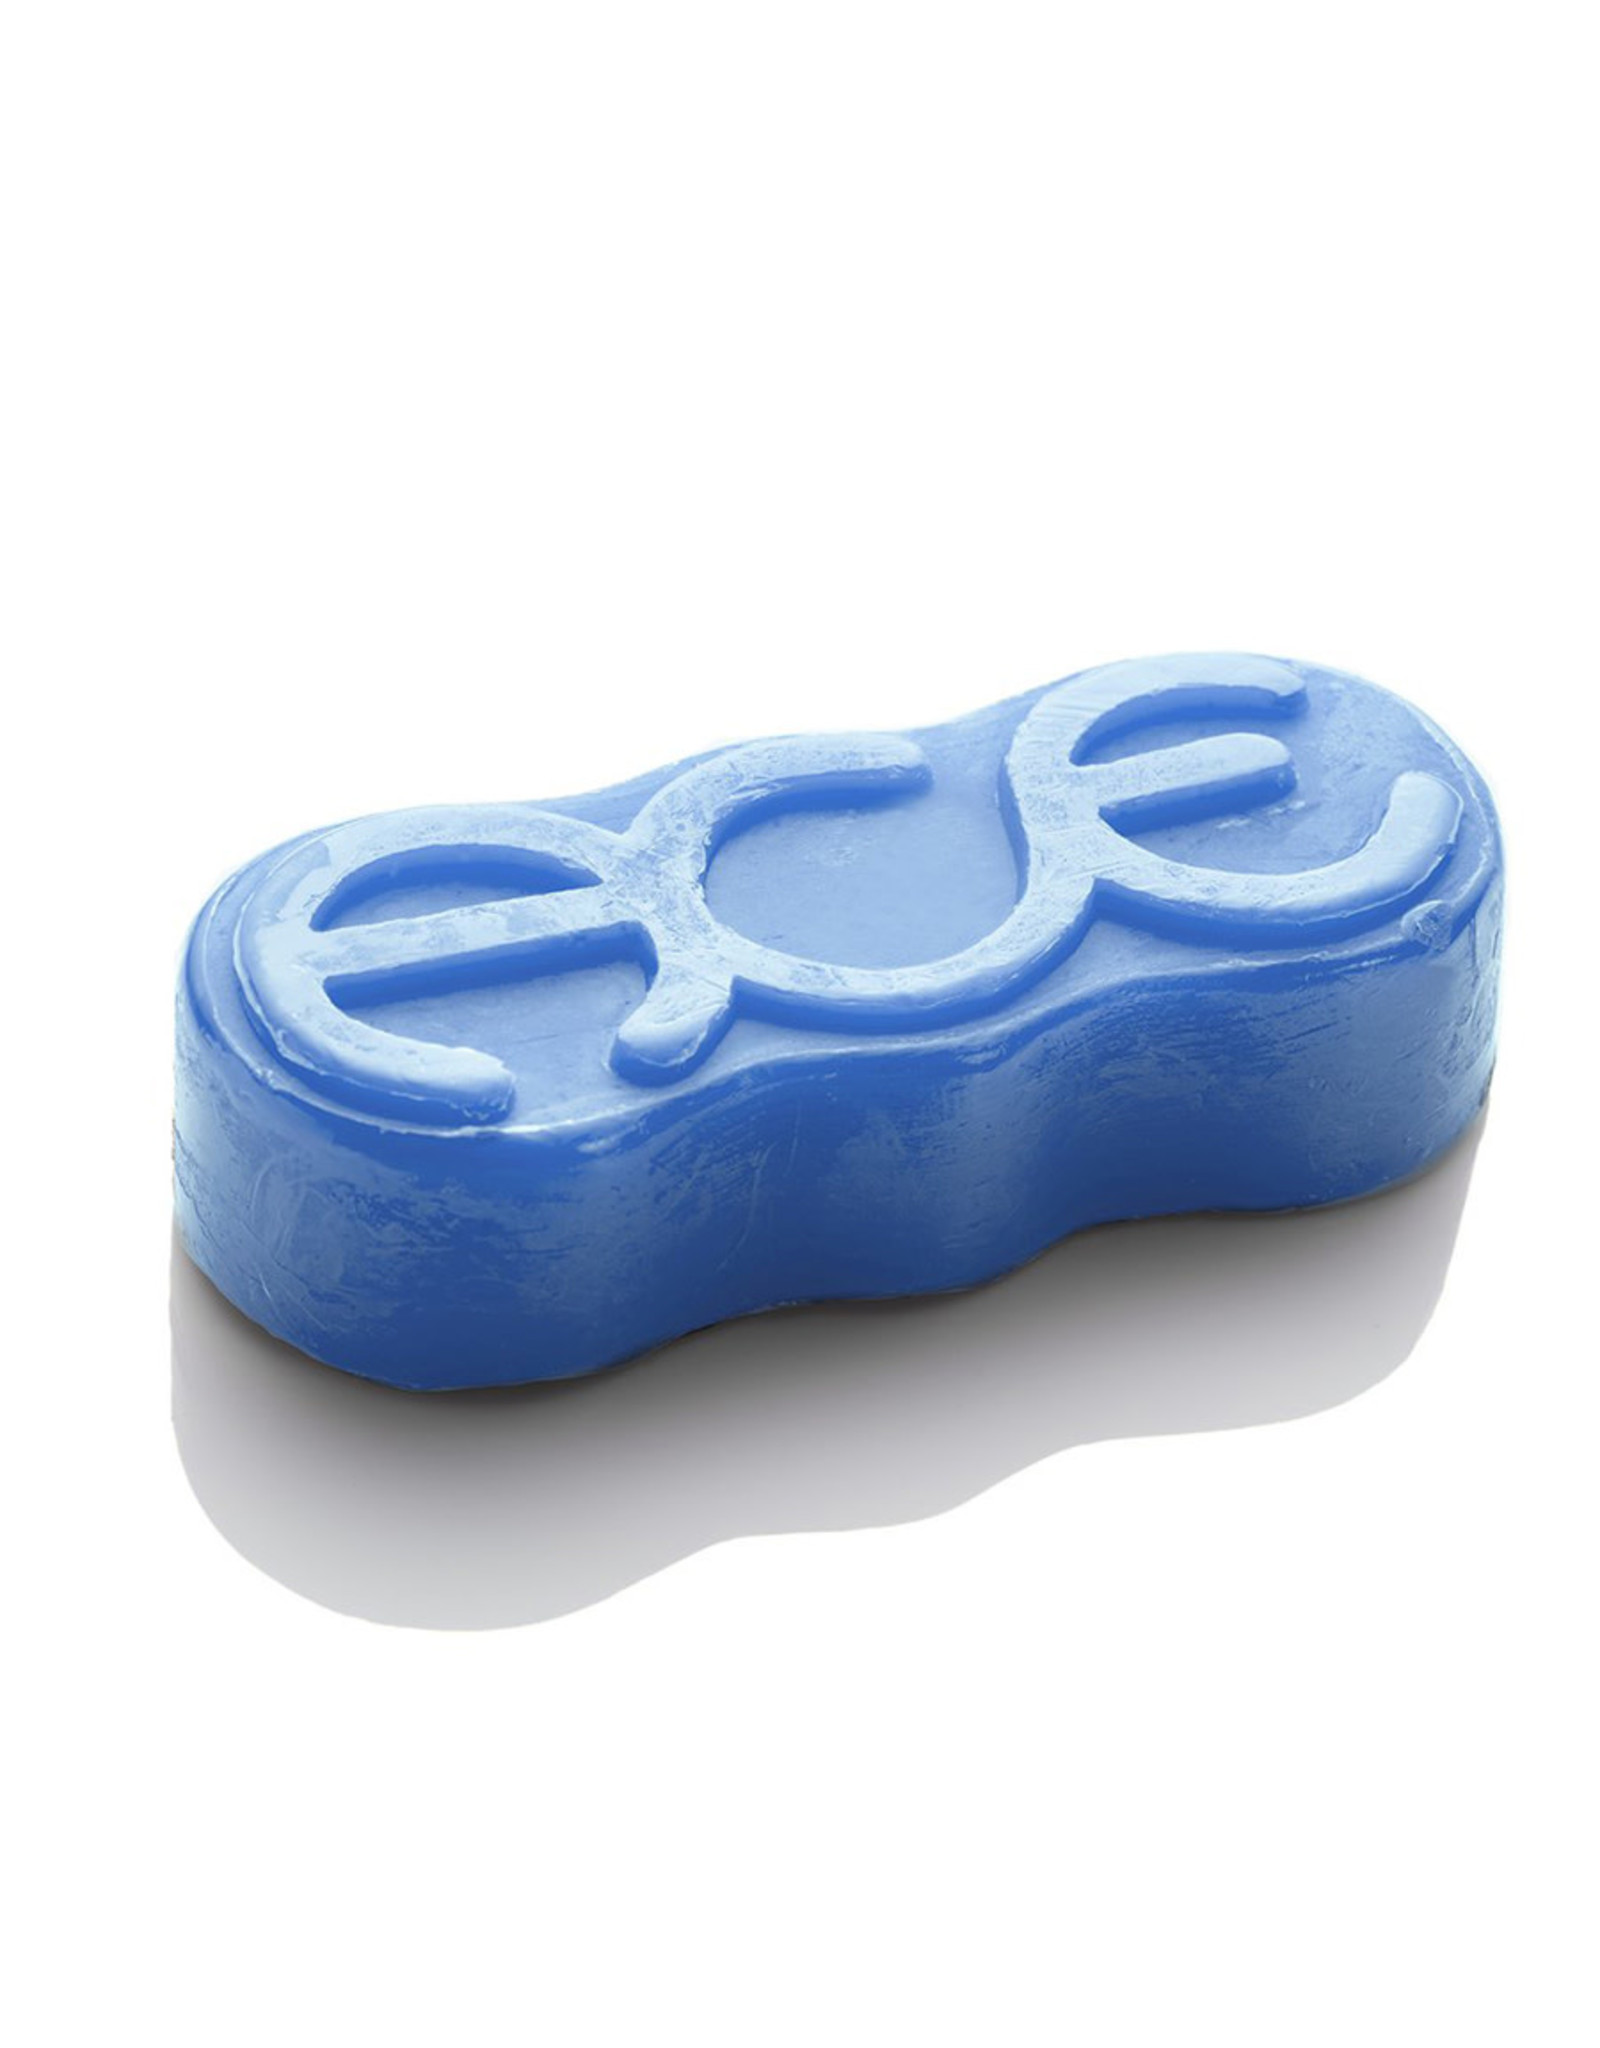 Ace Trucks Ace Wax Rings (Blue)